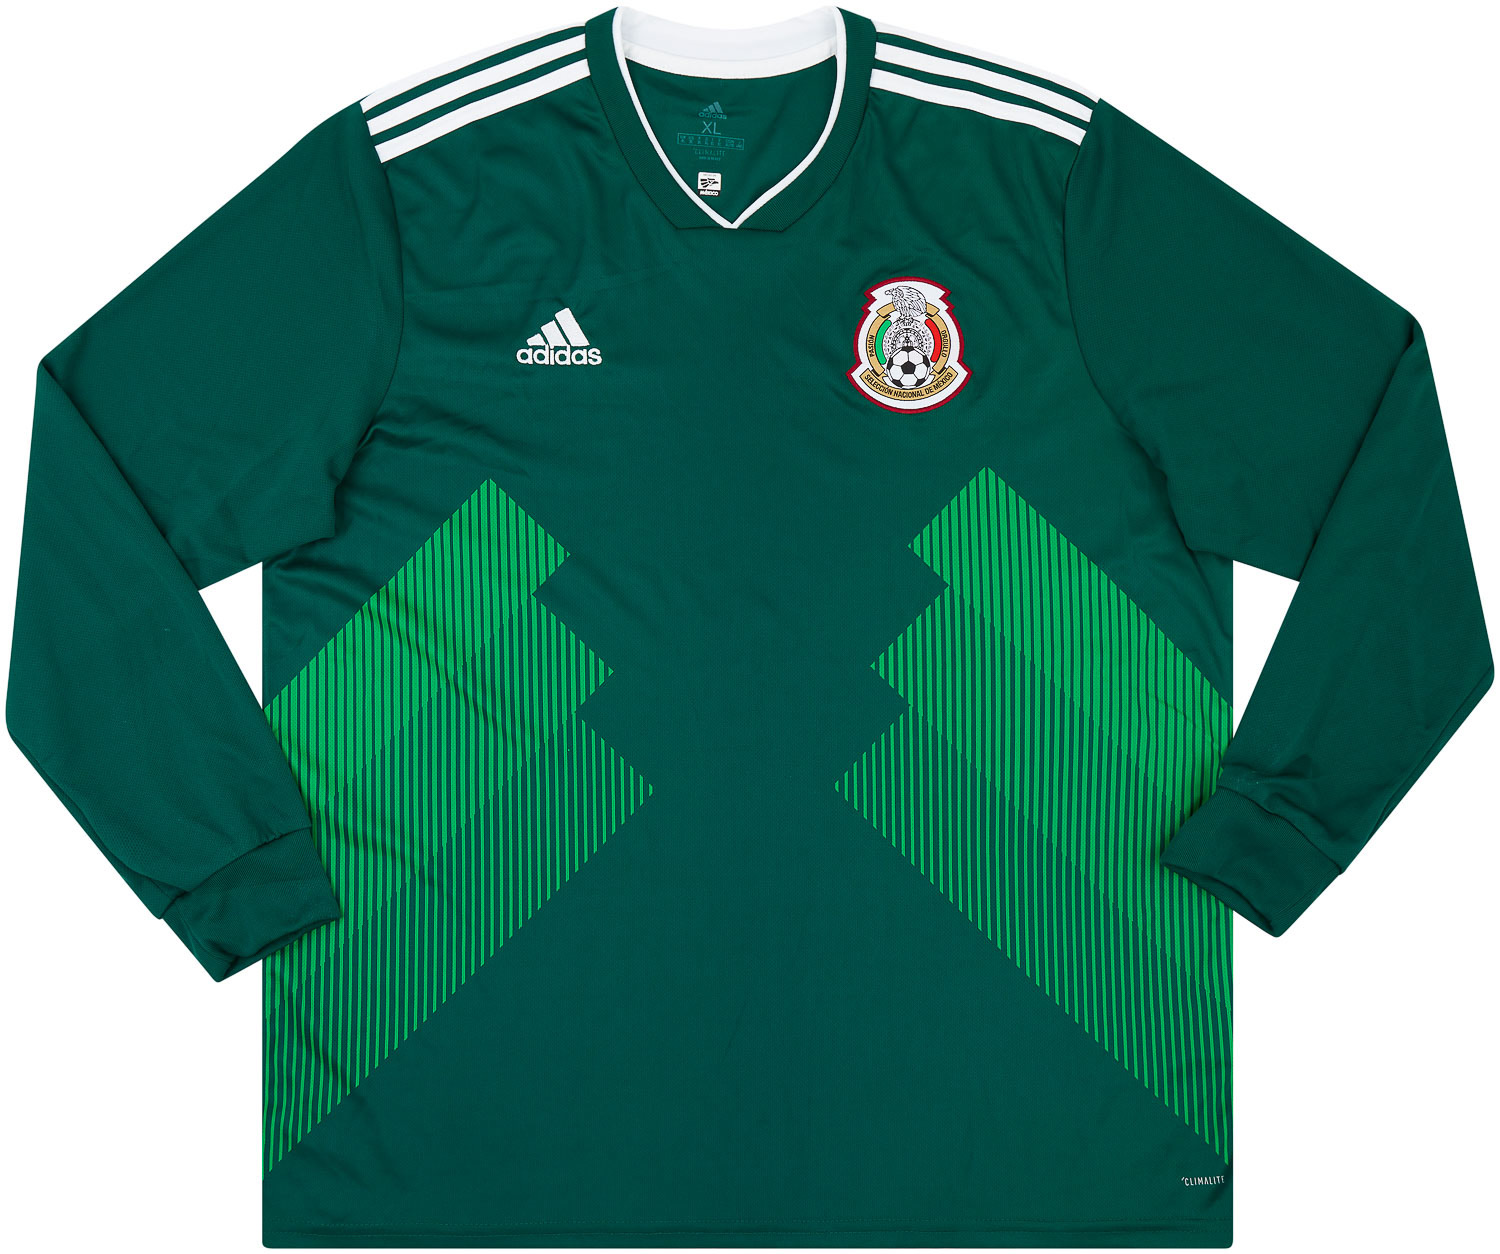 2018-19 Mexico Home Shirt